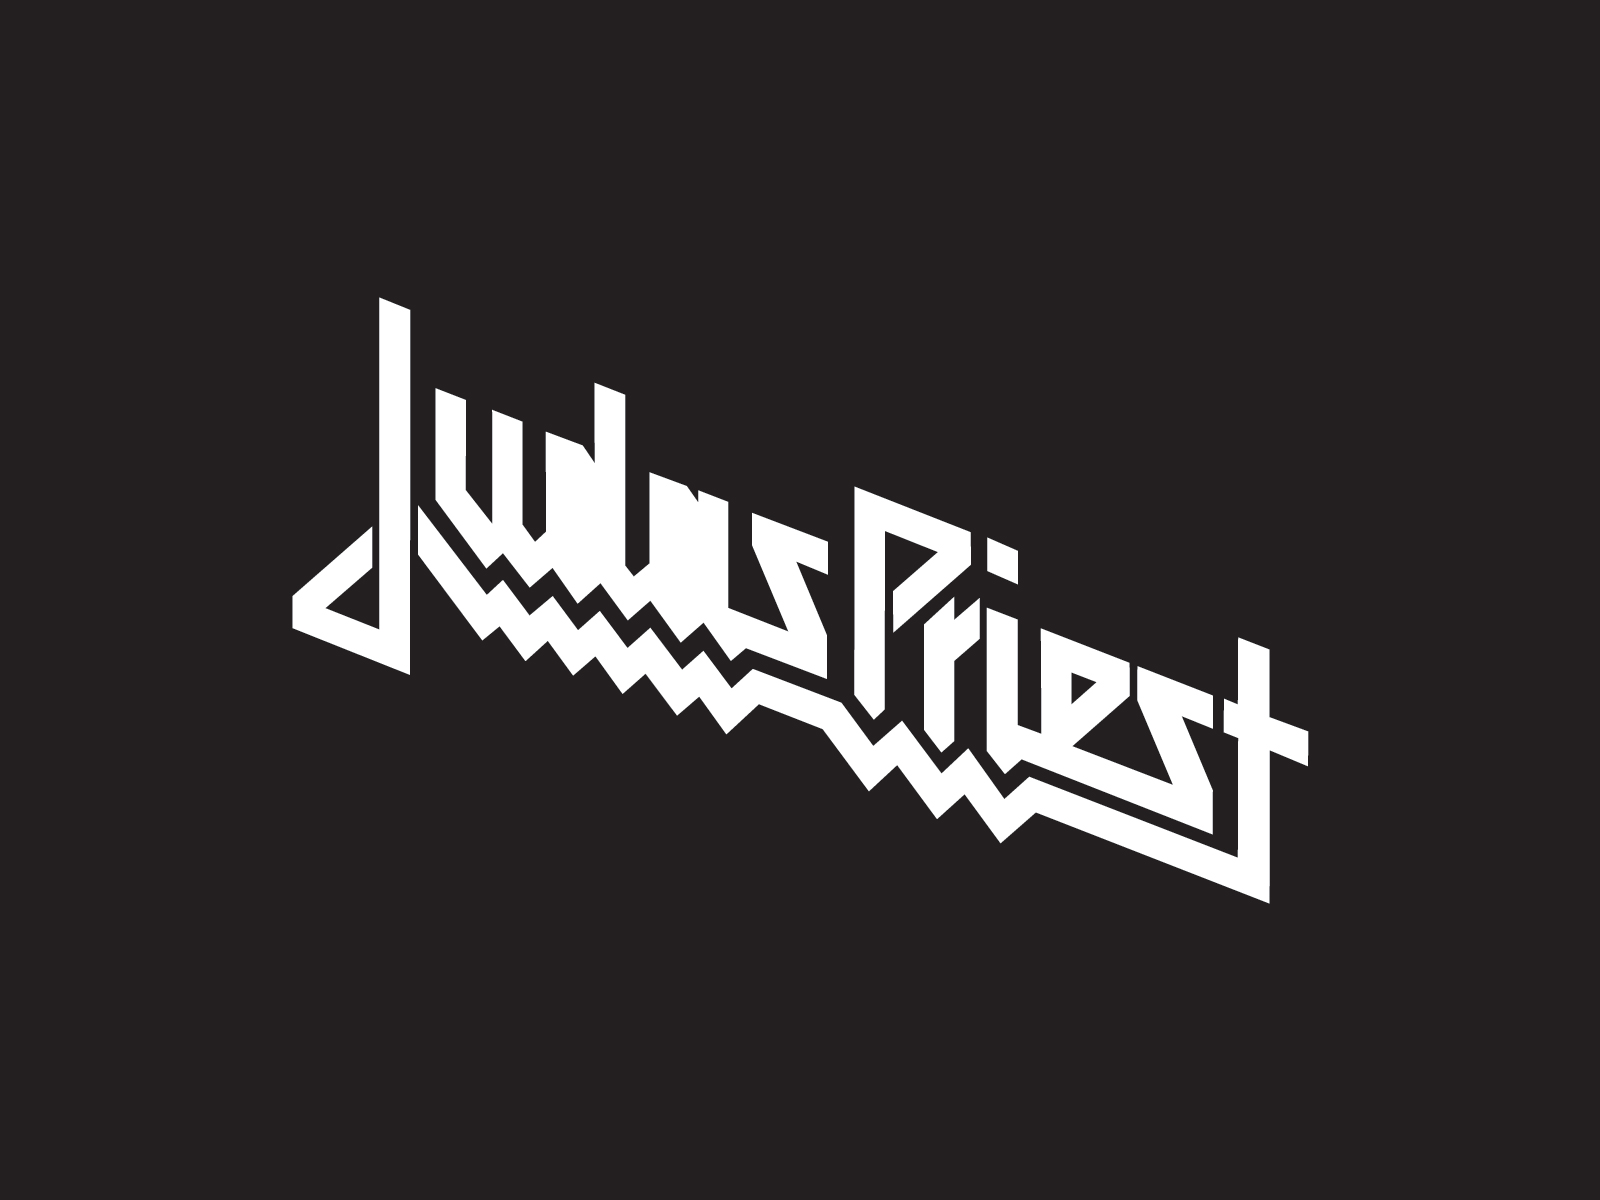 Judas Priest wallpaper | Band logos - Rock band logos, metal bands ...